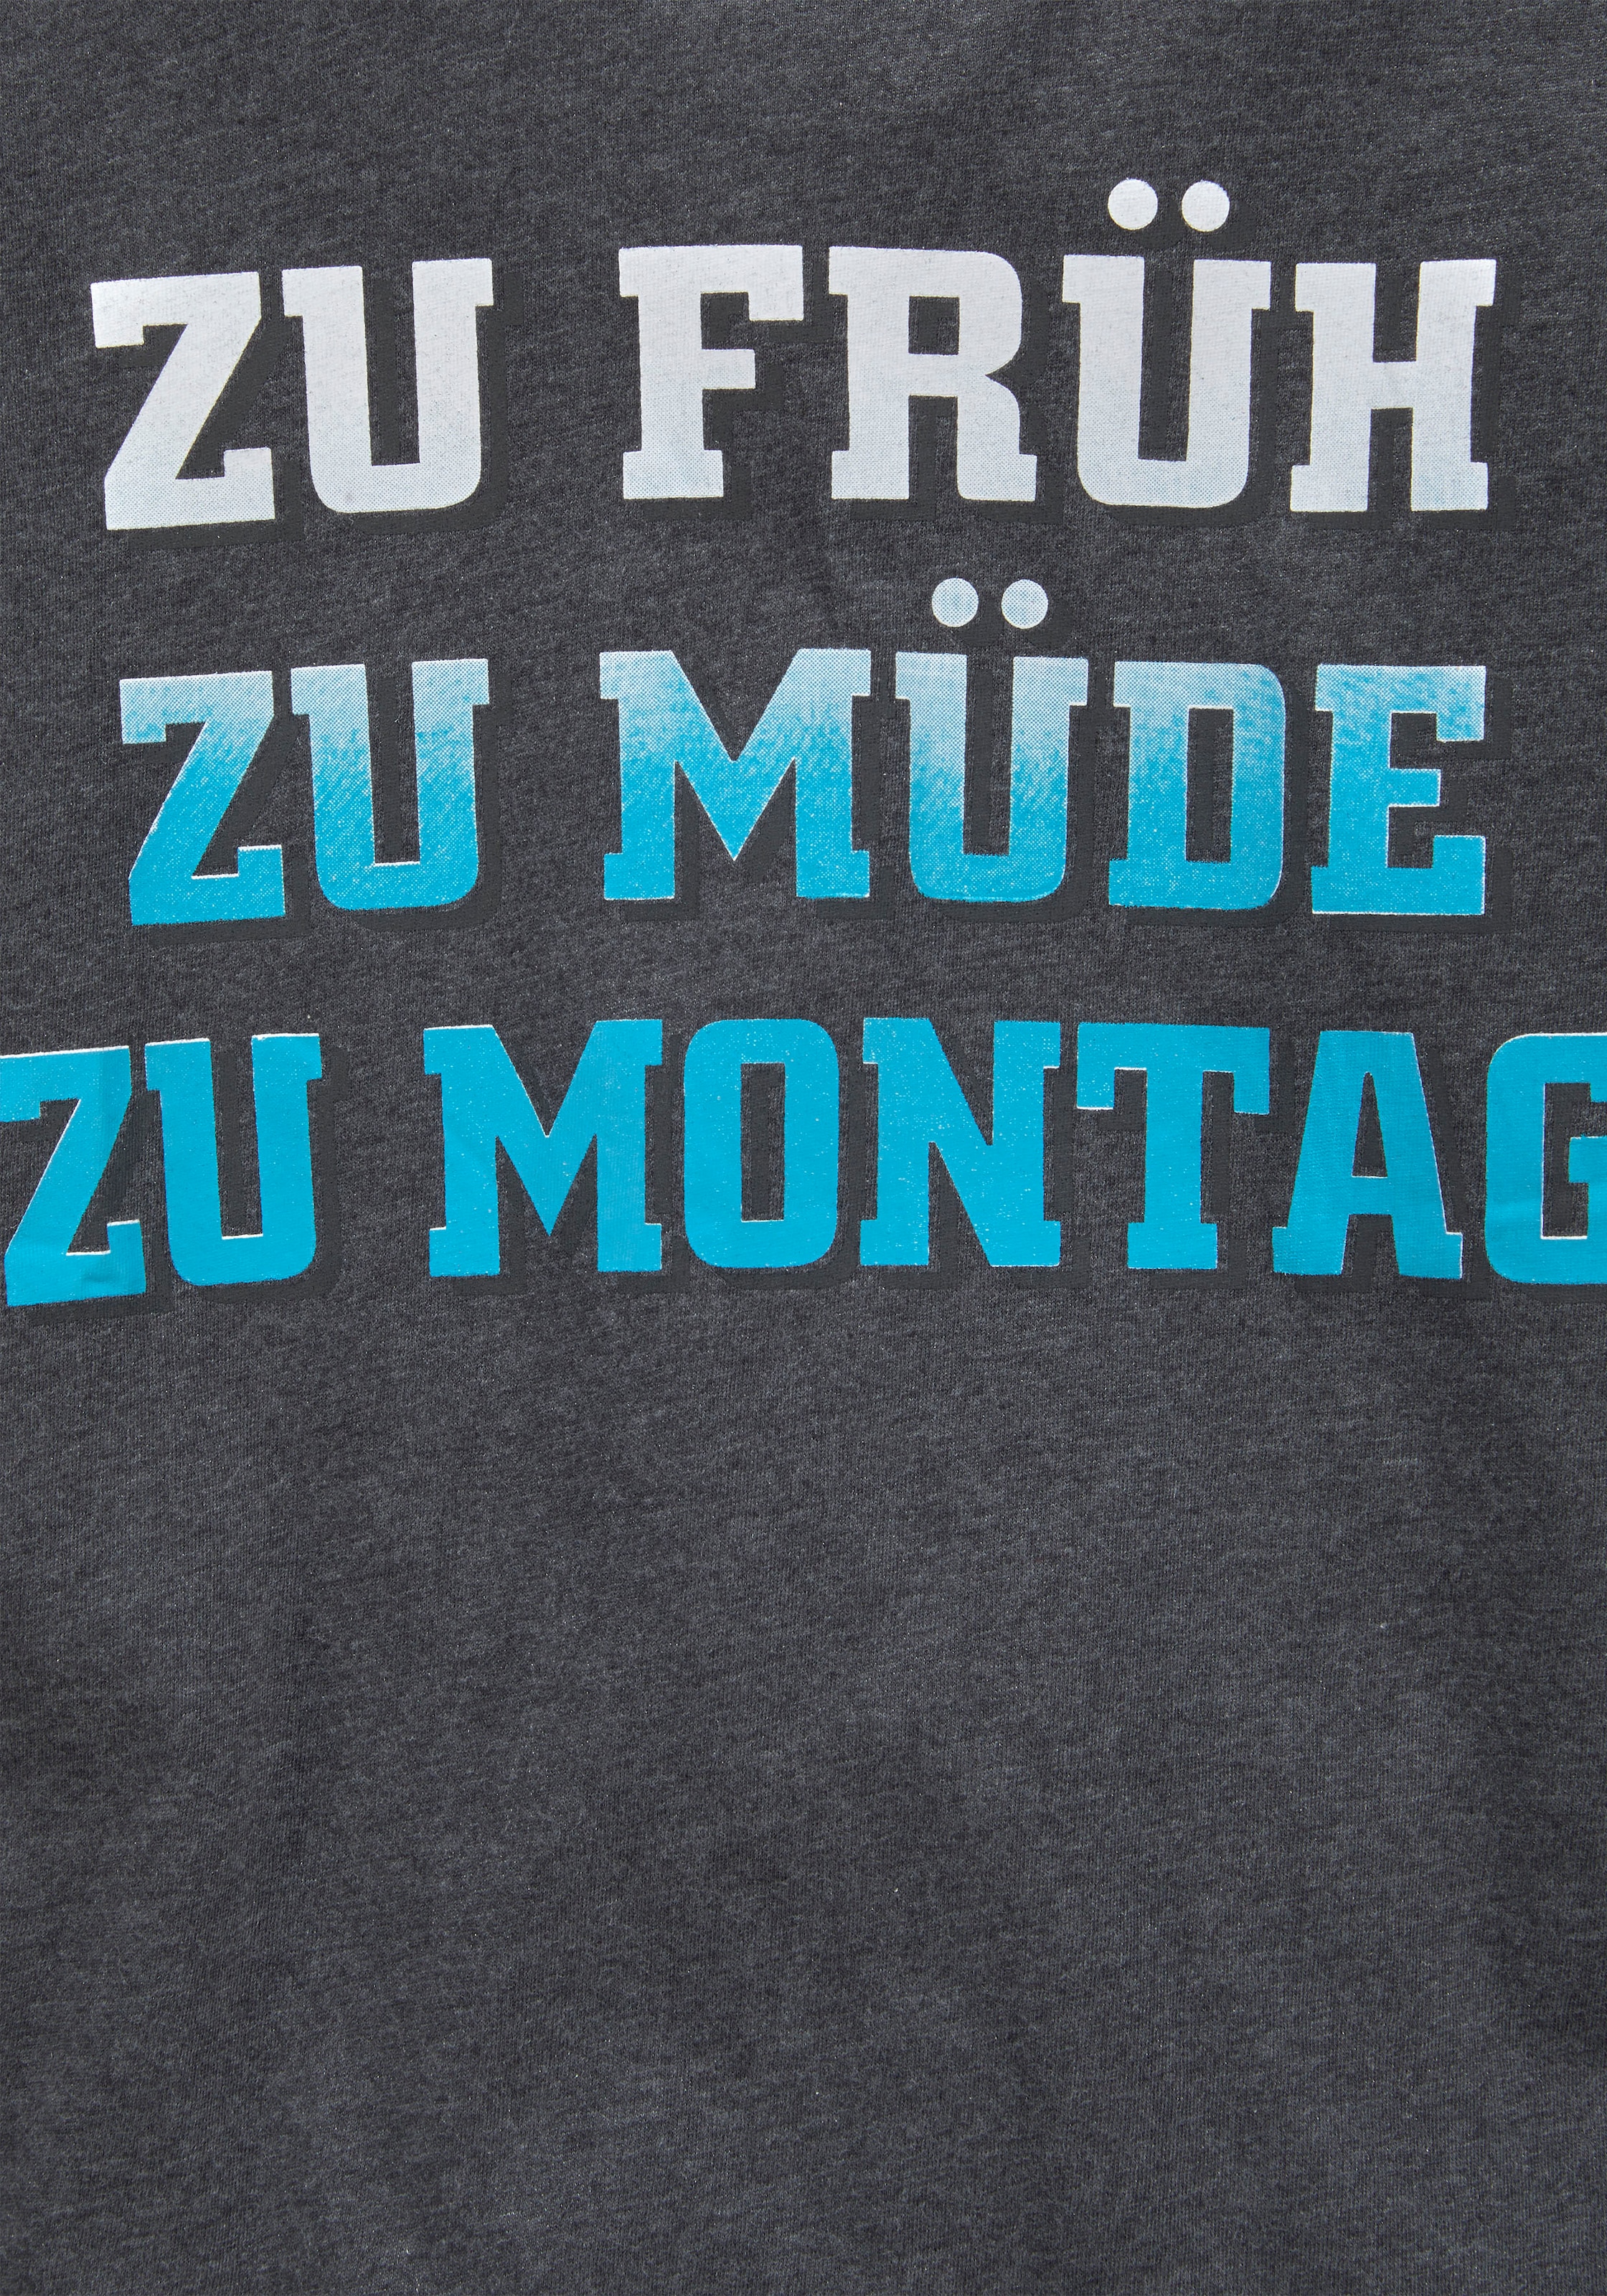 KIDSWORLD T-Shirt »ZU FRÜH, ZU MÜDE...«, Spruch